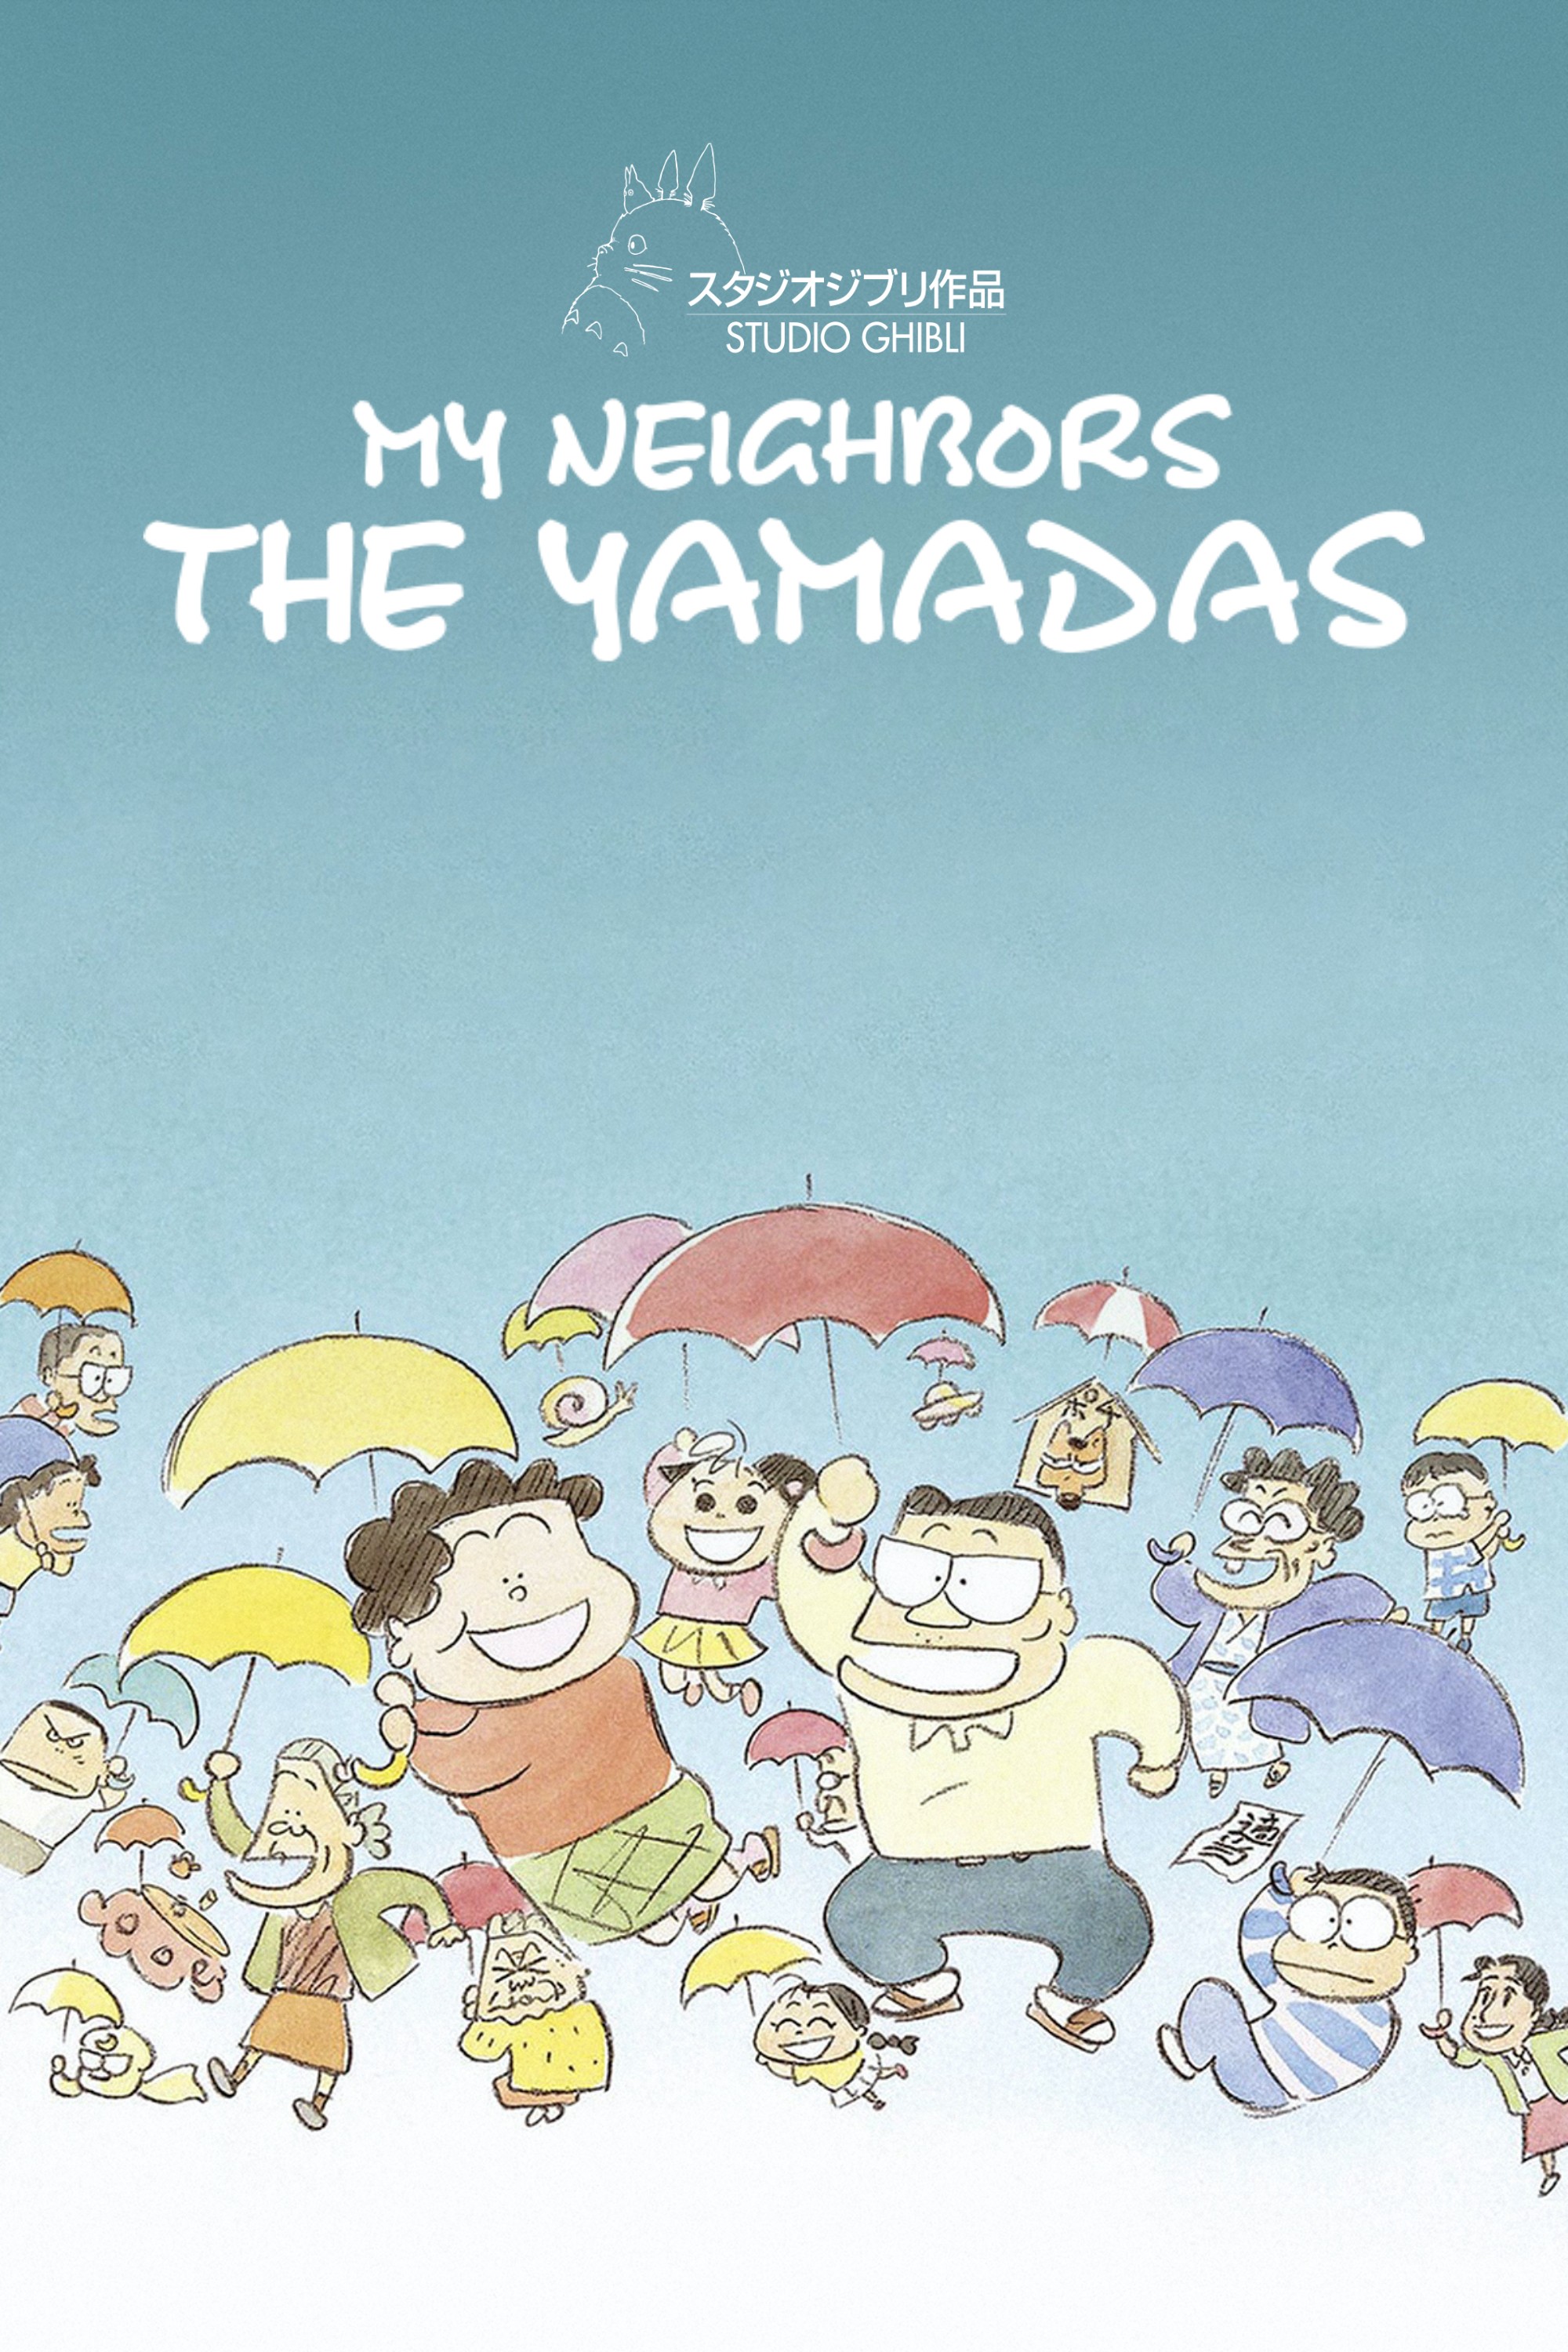 Gia đình nhà Yamada - Gia đình nhà Yamada (1999)